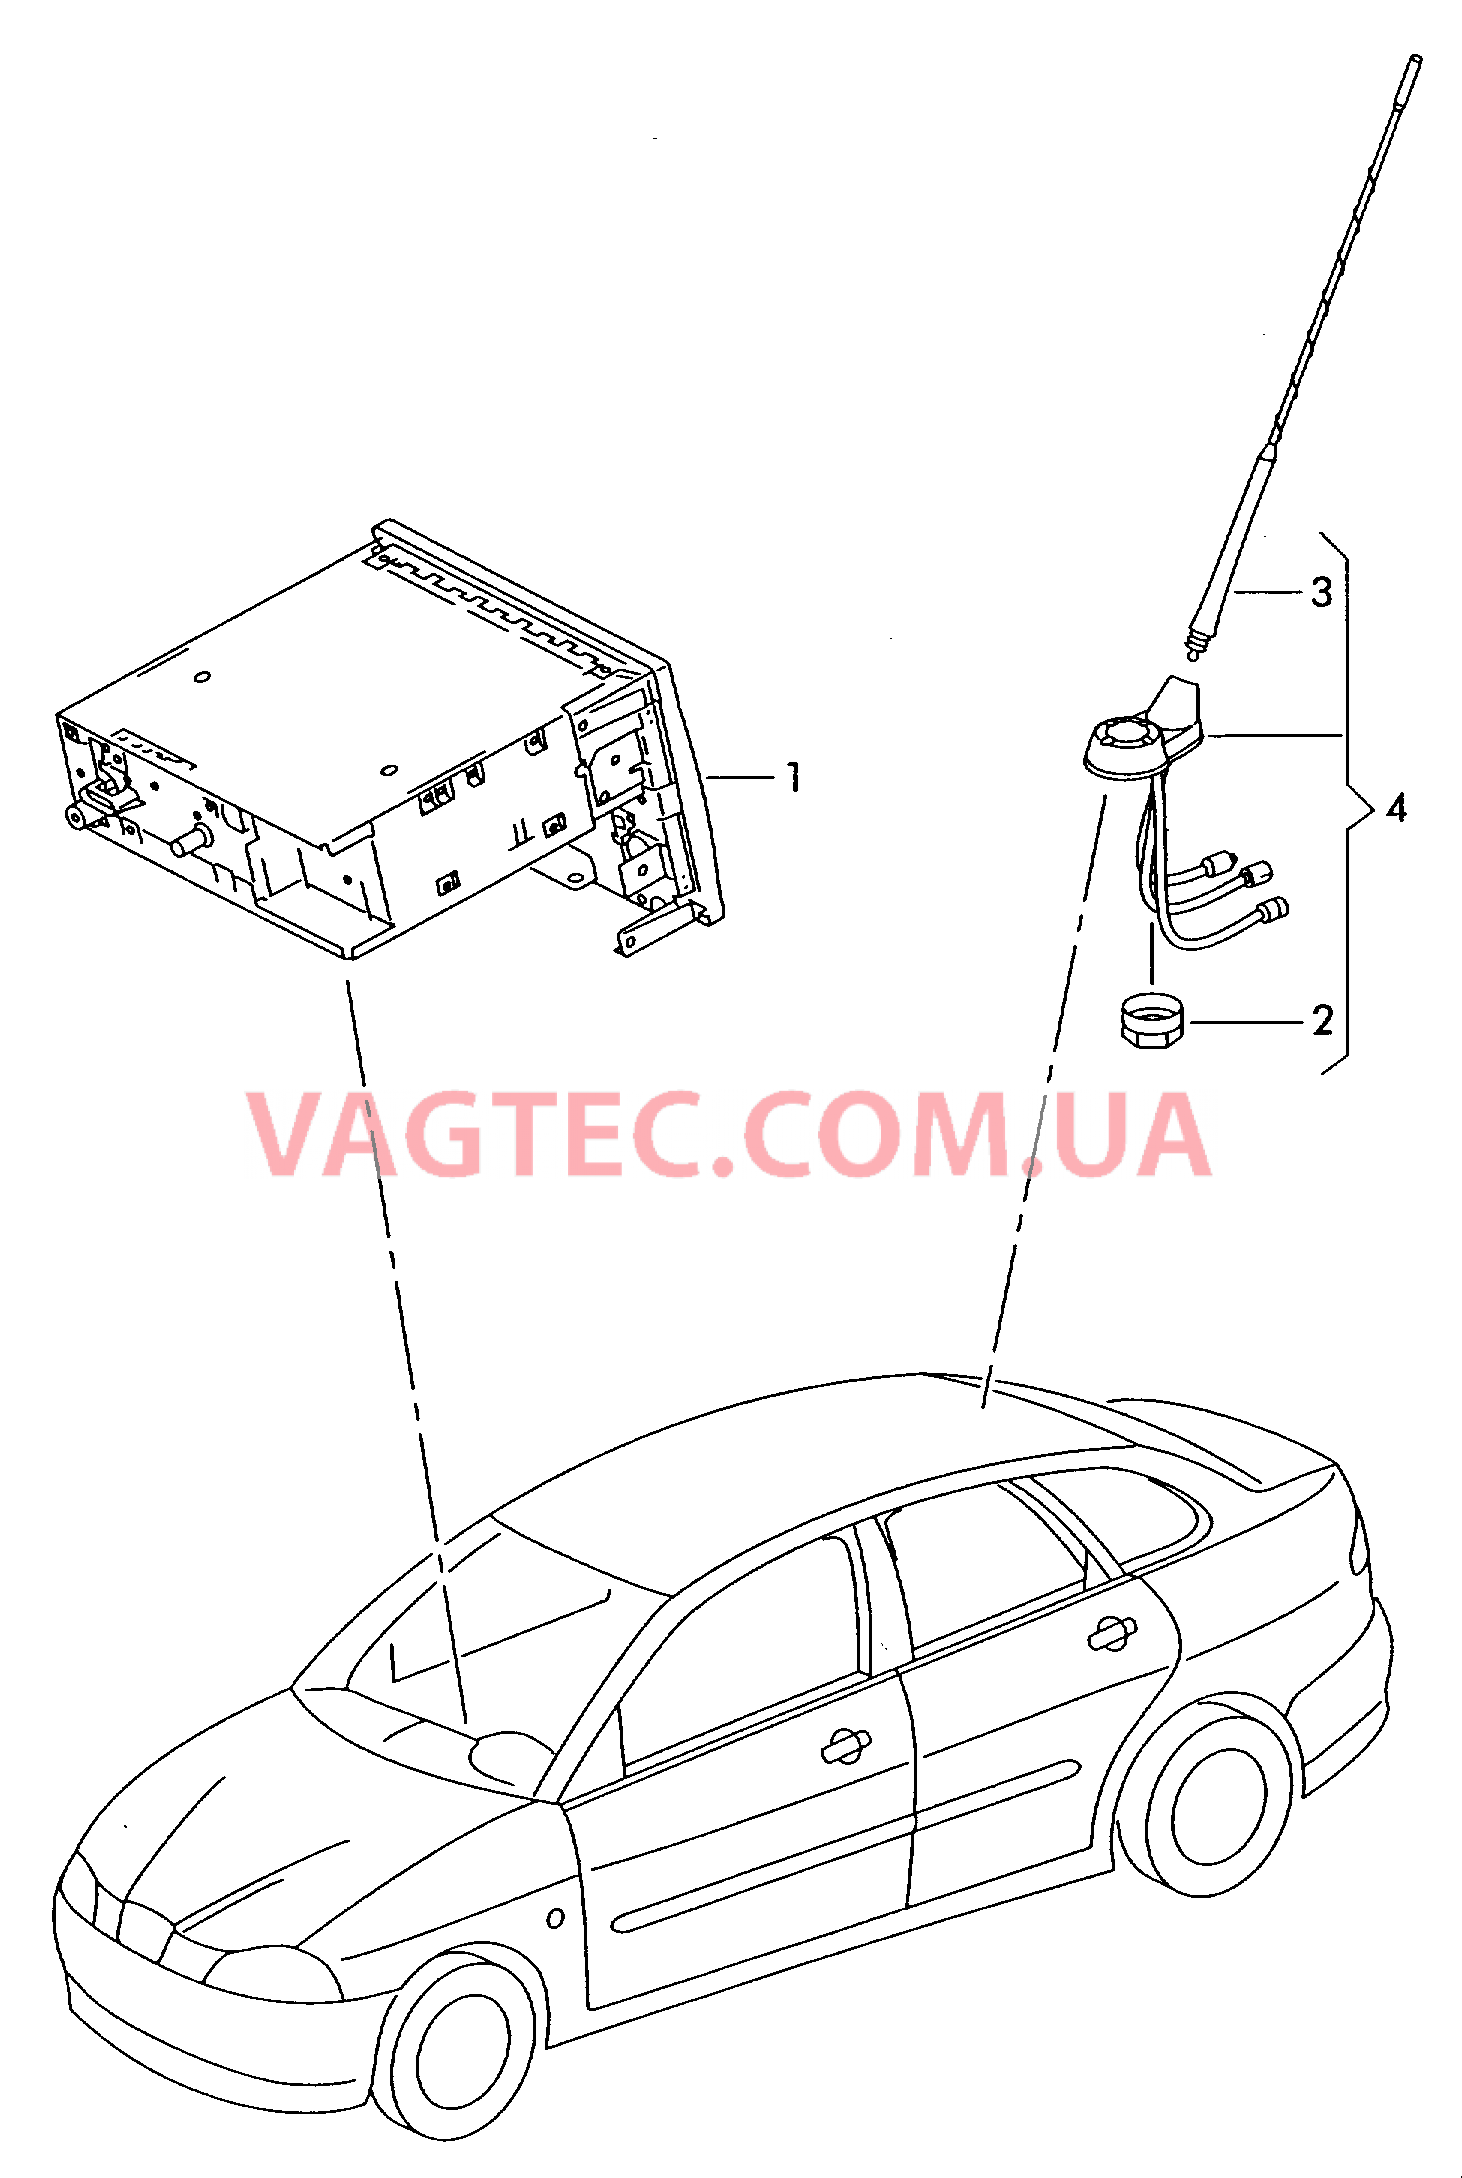 Электрические детали для системы навигации  для SEAT Ibiza 2005